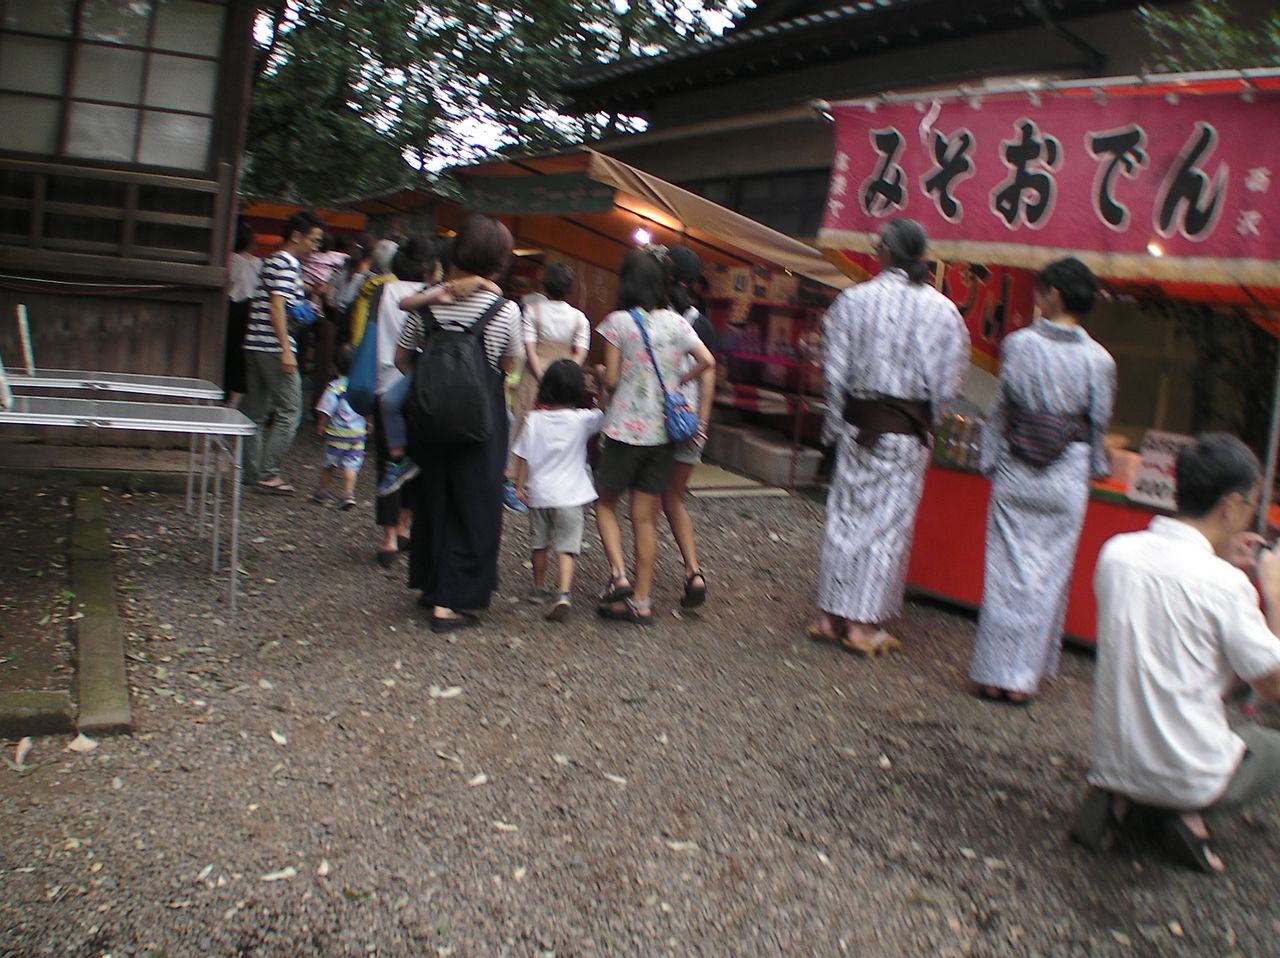 9月5日(木)にご案内いたしました、世田谷八幡宮秋季大祭が本日より開催されました。午後2時より恒例の奉納相撲があり大勢のお客さんで賑わっておりました。外国人観光客の方々がとても多かったです。明日は…